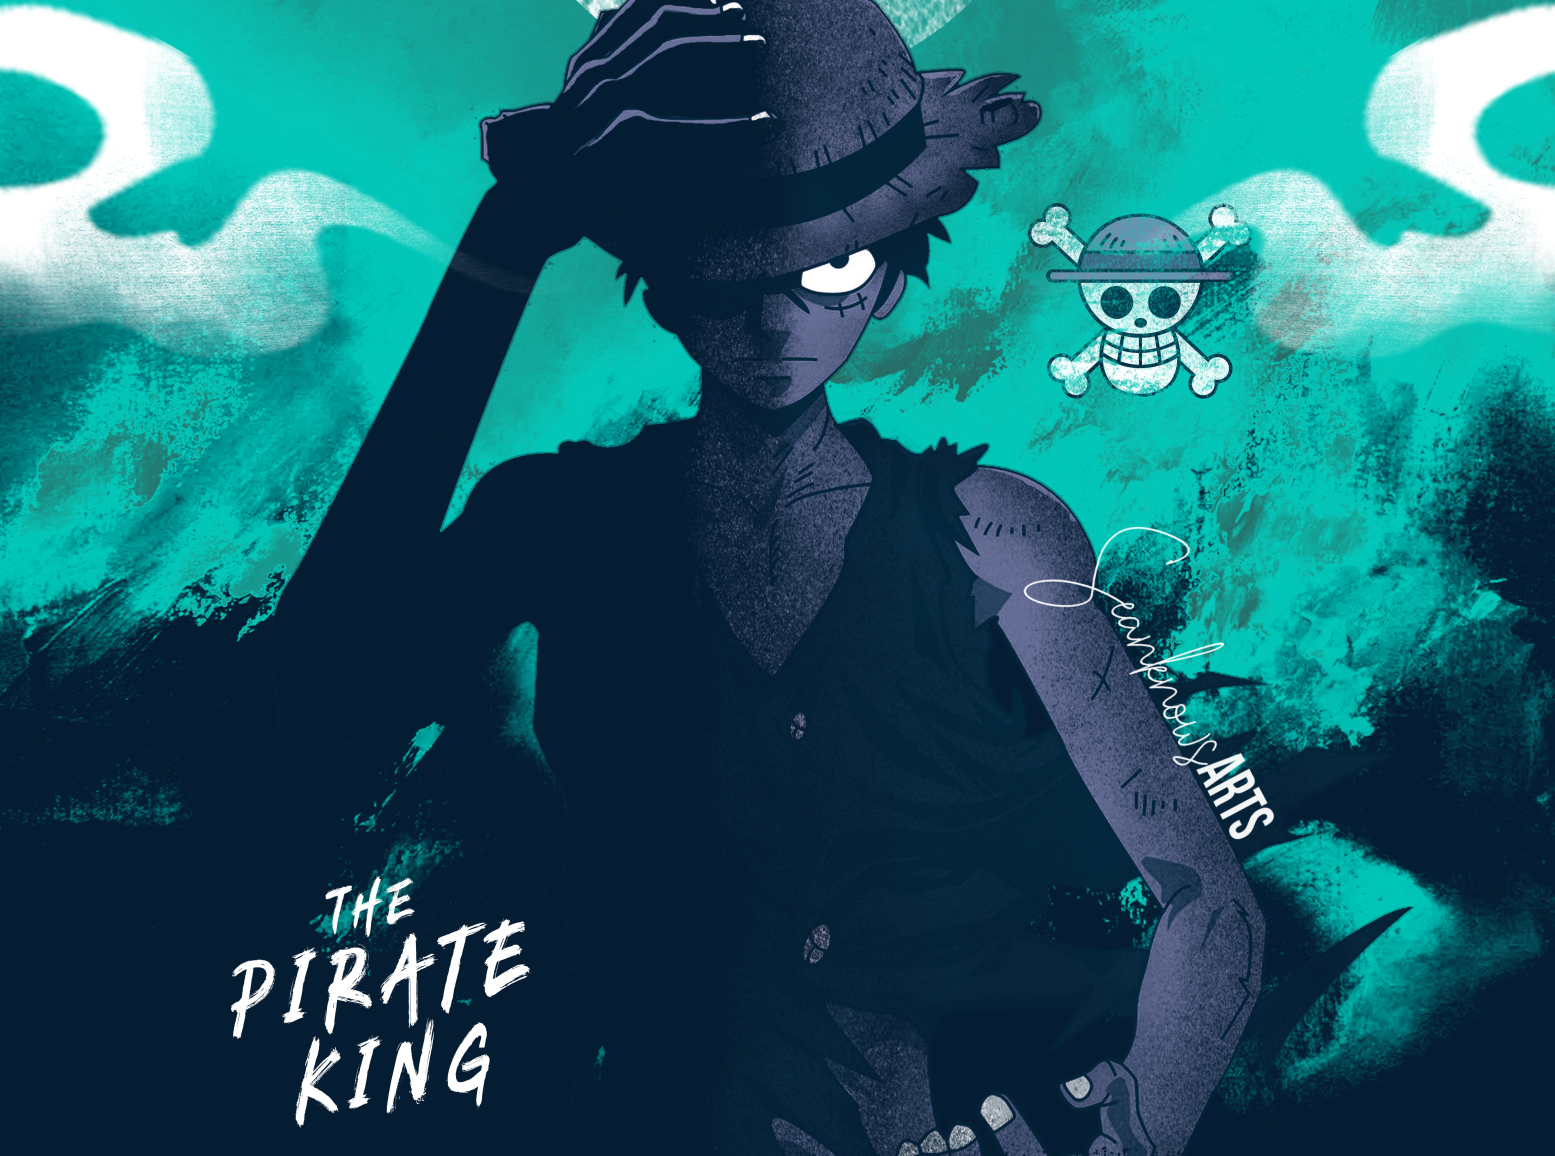 Trở thành Vua hải tặc bất kể nơi đâu với hình nền One Piece đầy sức mạnh và uy lực. Cùng đồng hành với Luffy và các thành viên băng hải tặc để chinh phục đại dương rộng lớn.